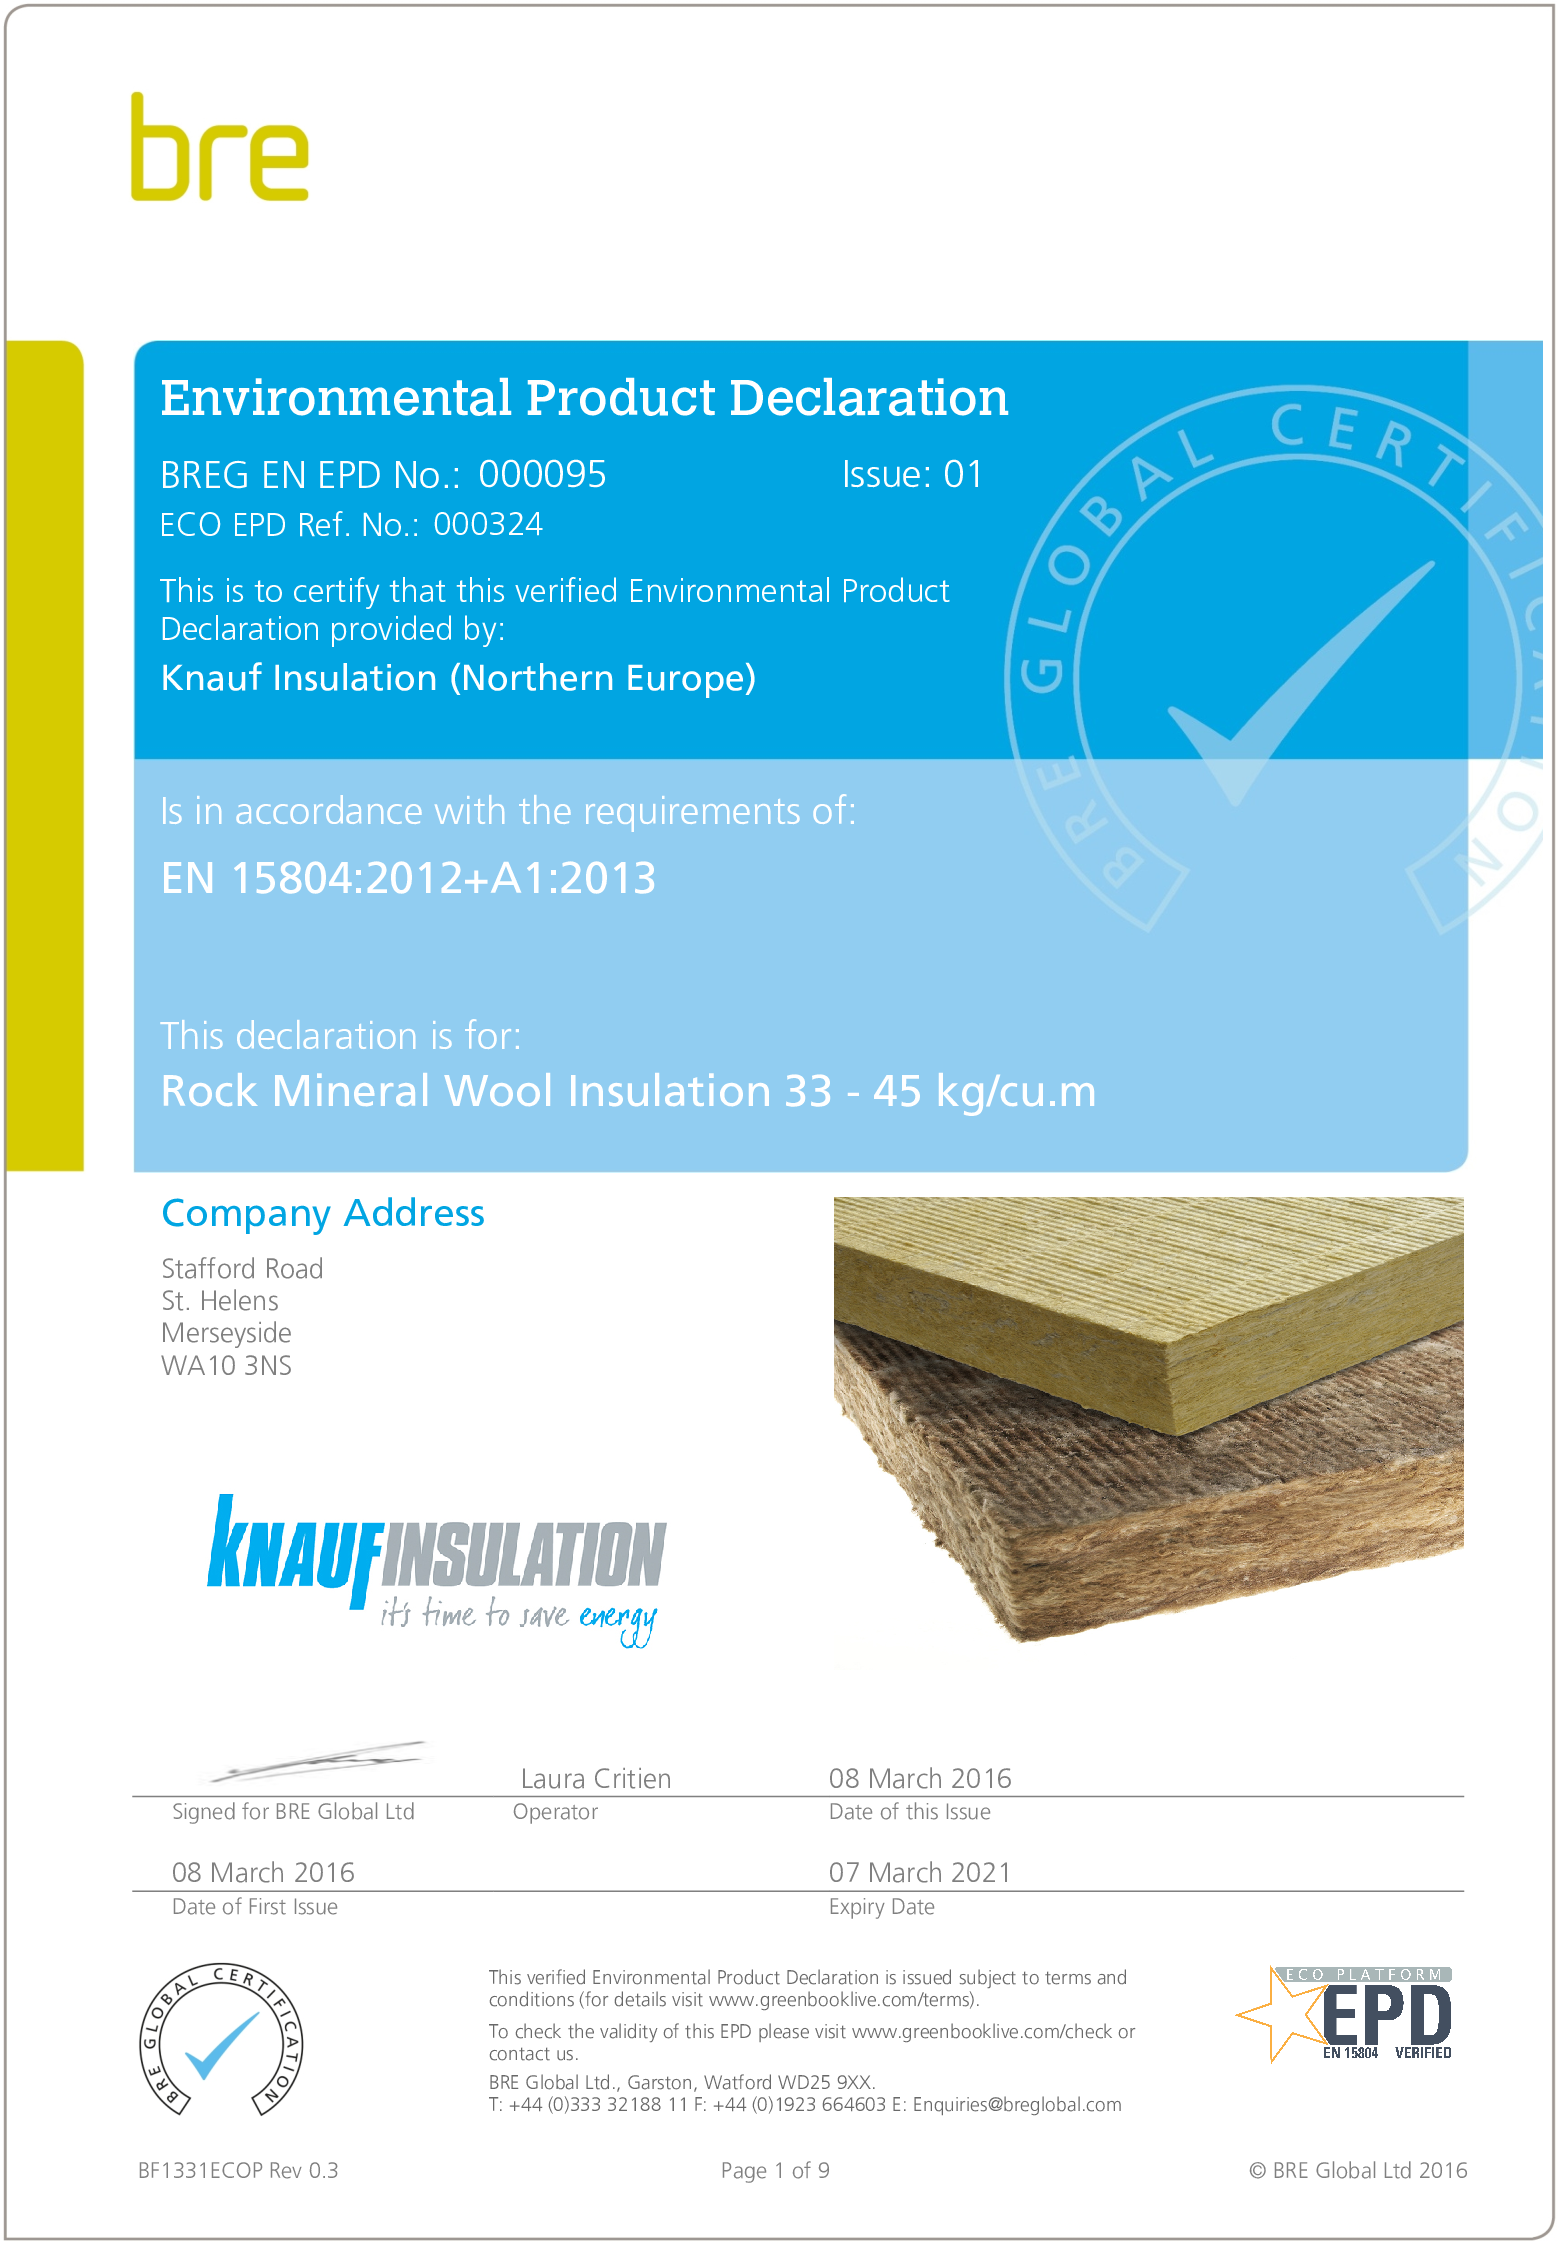 RMW Insulation 33 - 45 kg/cu.m